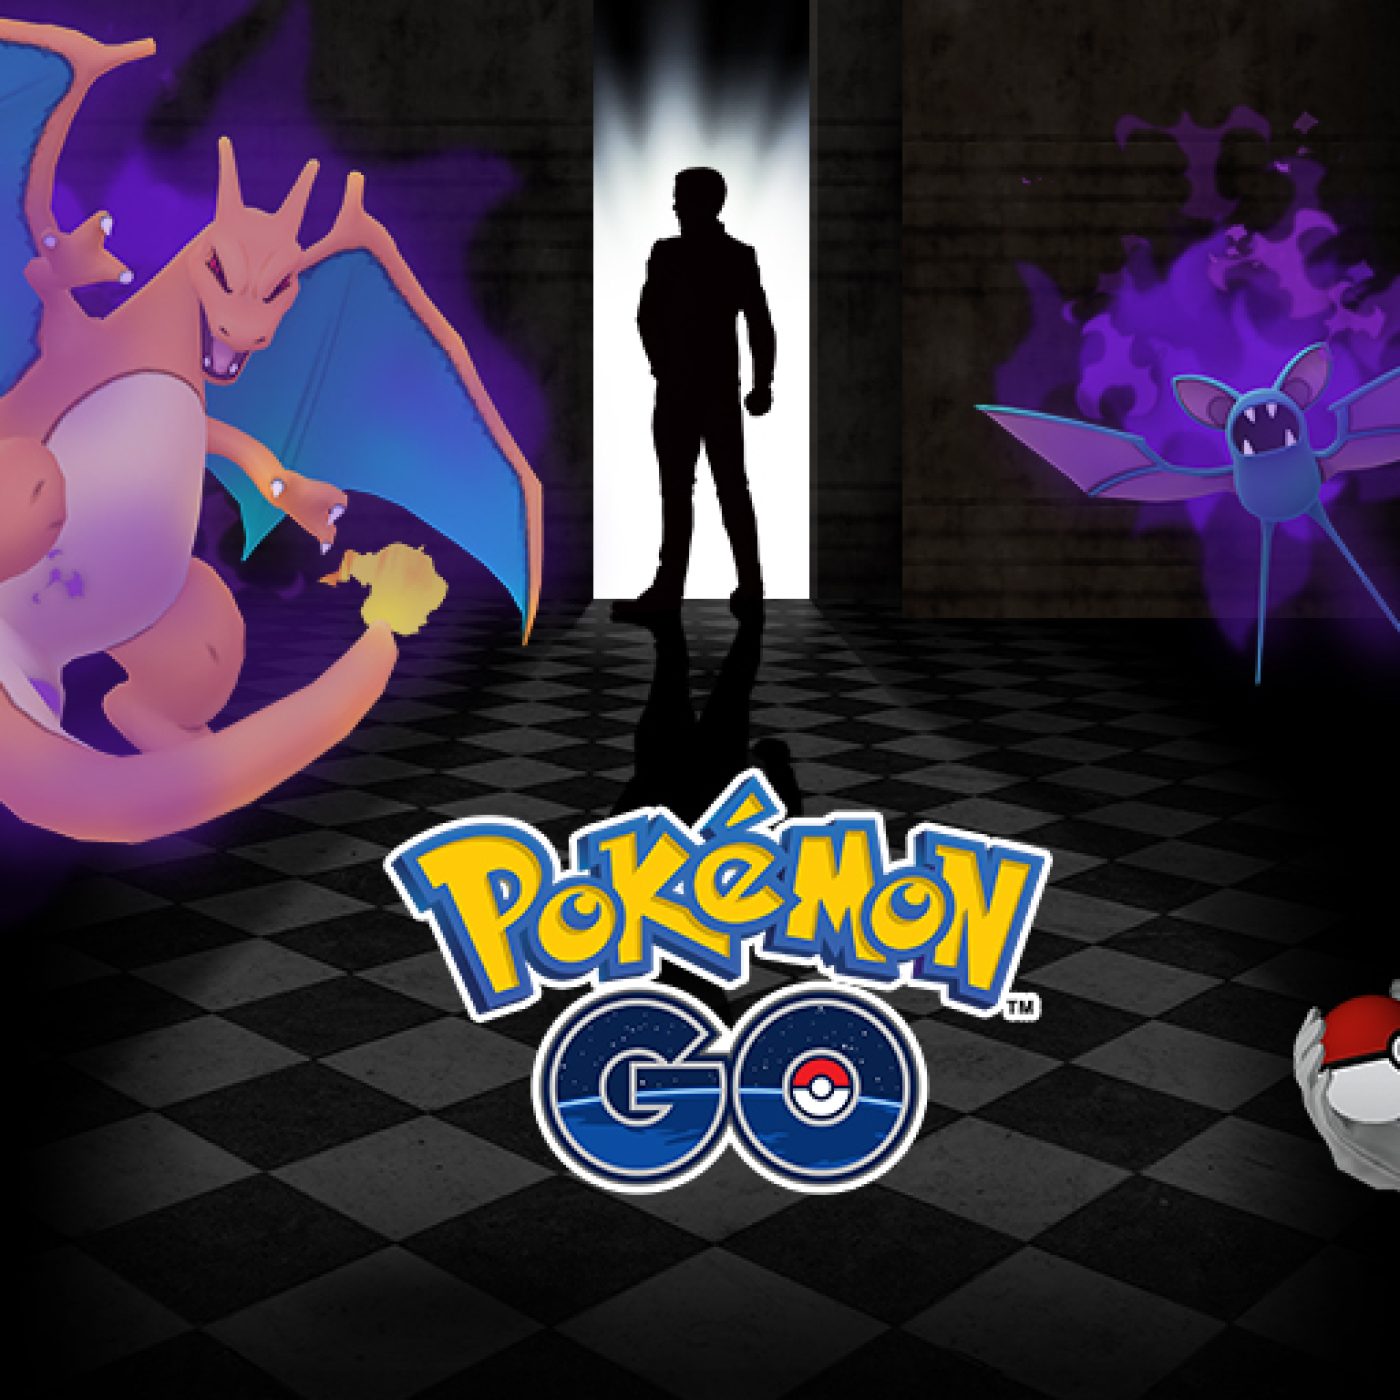 Pokémon Go: Shadow Pokémon